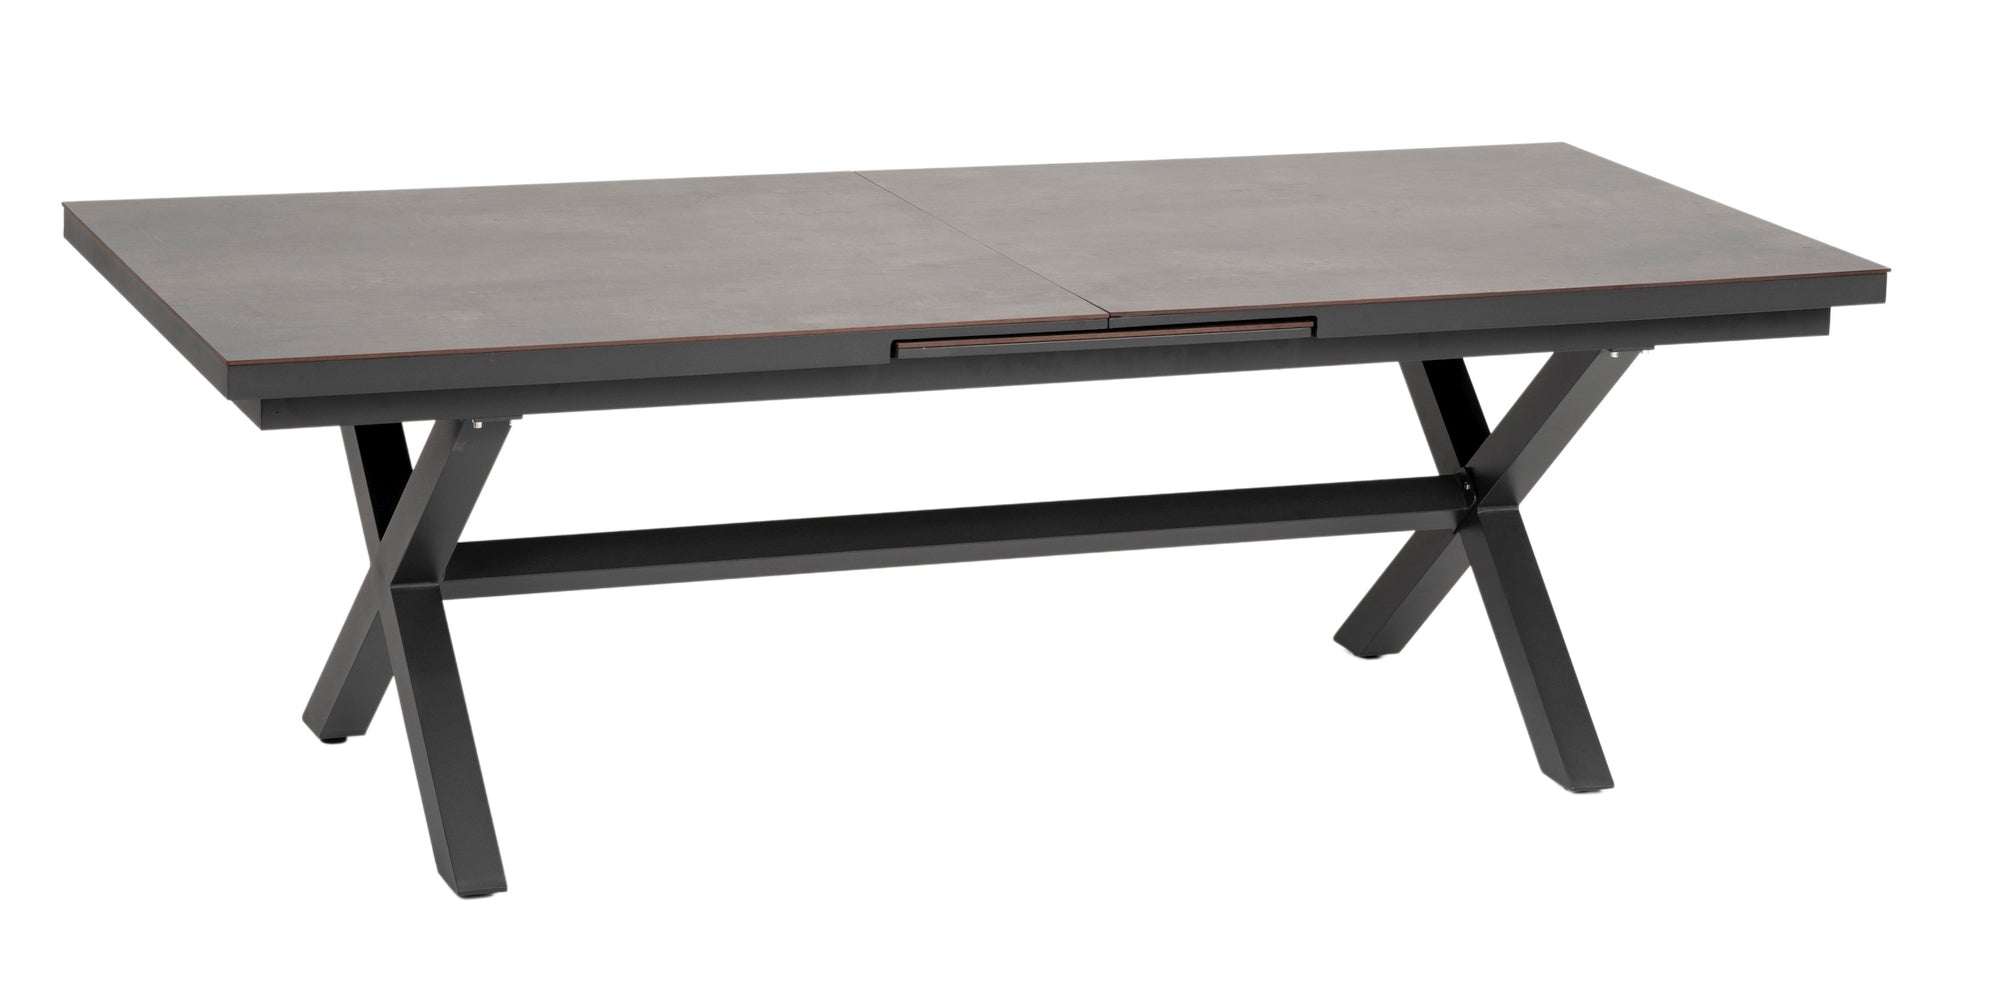 Hochwertiger 'Lexy' Gartentisch in dunkelgrauem Steindekor mit HPL-Platte und Synchronauszug, erhältlich bei Gartenmoebelshop.at